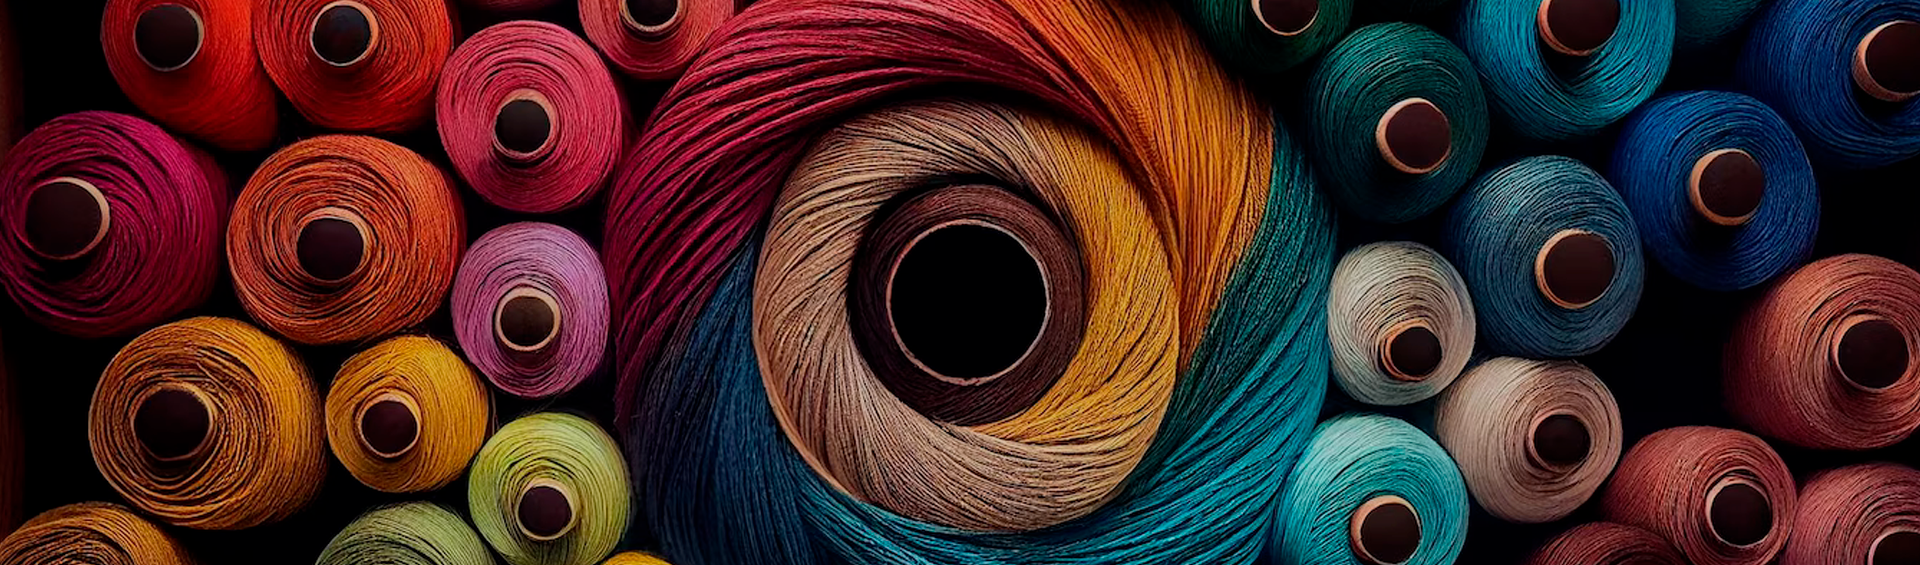 Текстильная промышленность фон. Развернутый рулон ткани. Файбер ткань. Текстильная промышленность Бразилии.